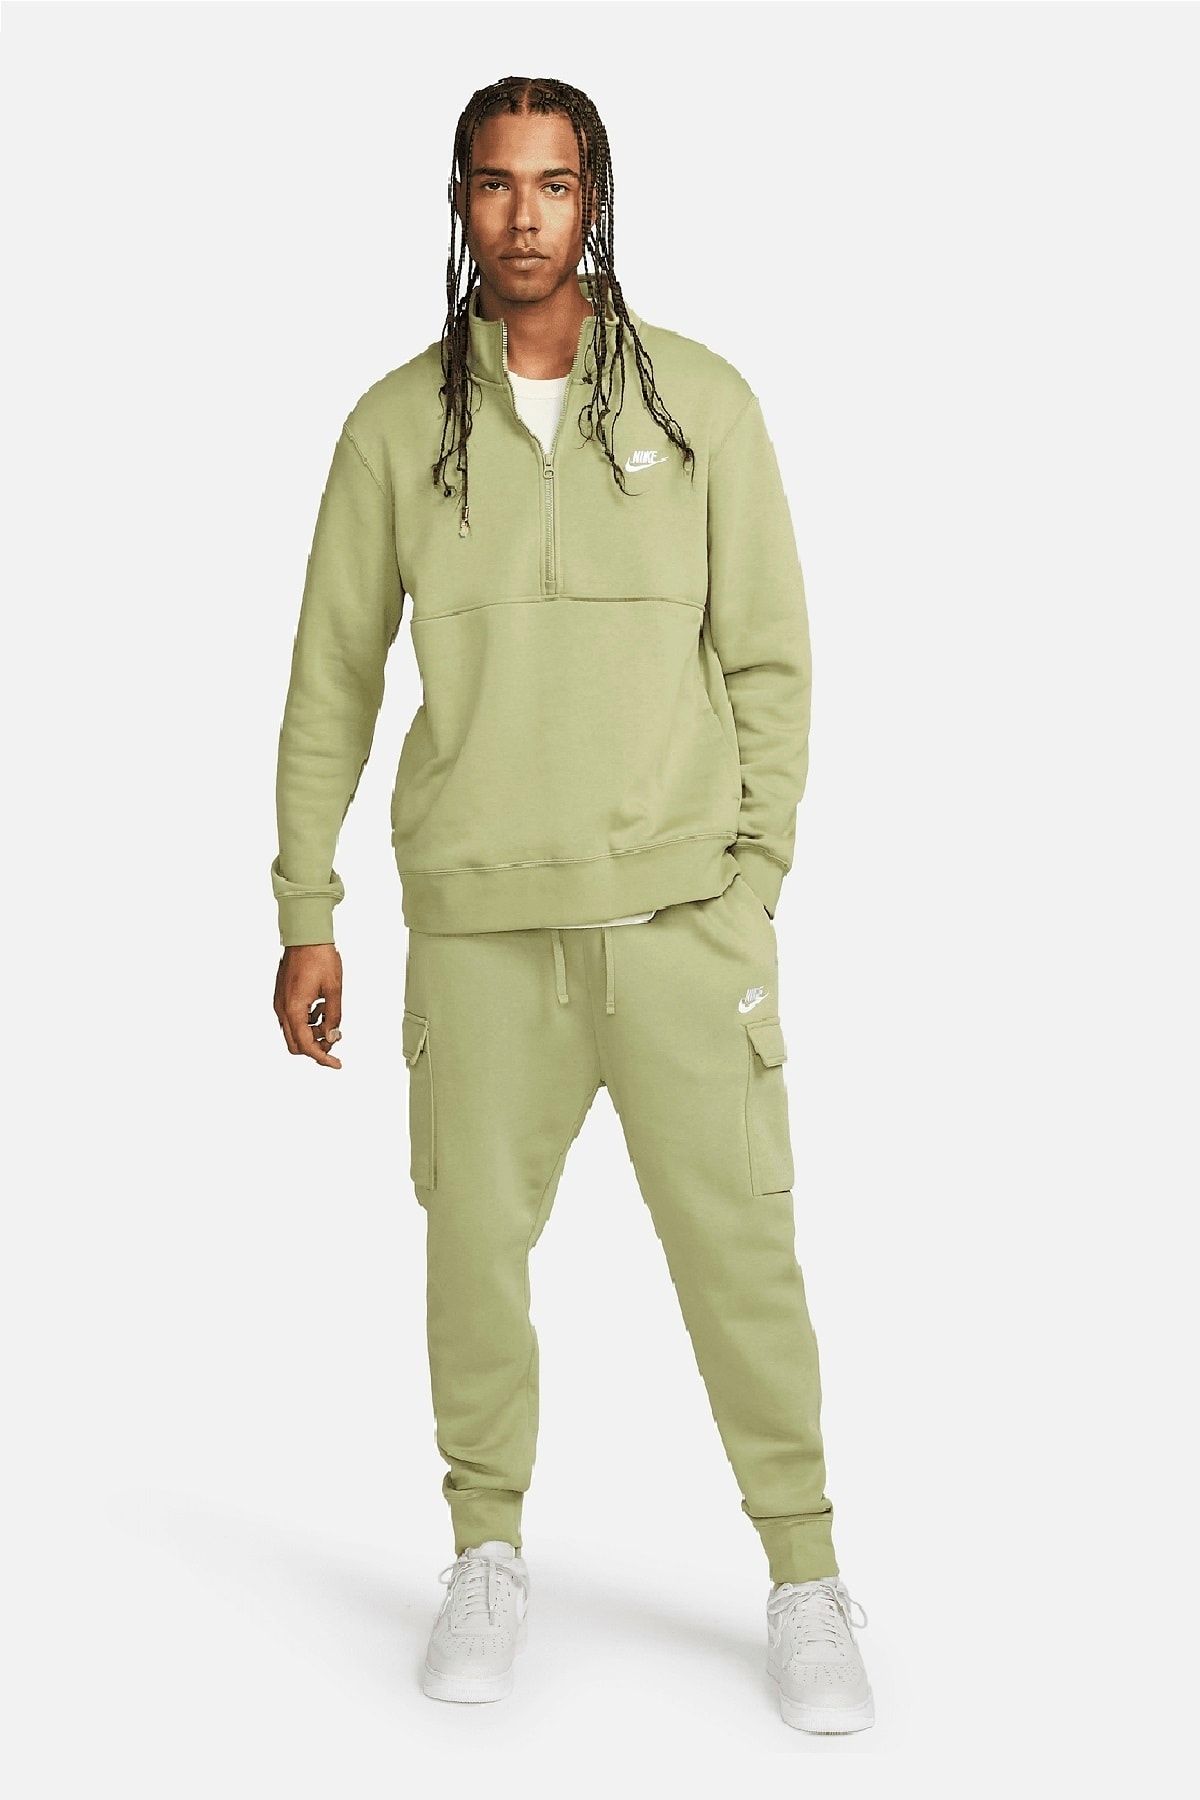 Nike Sportswear Club Fleece Men's Cargo Sweatpants - Trendyol